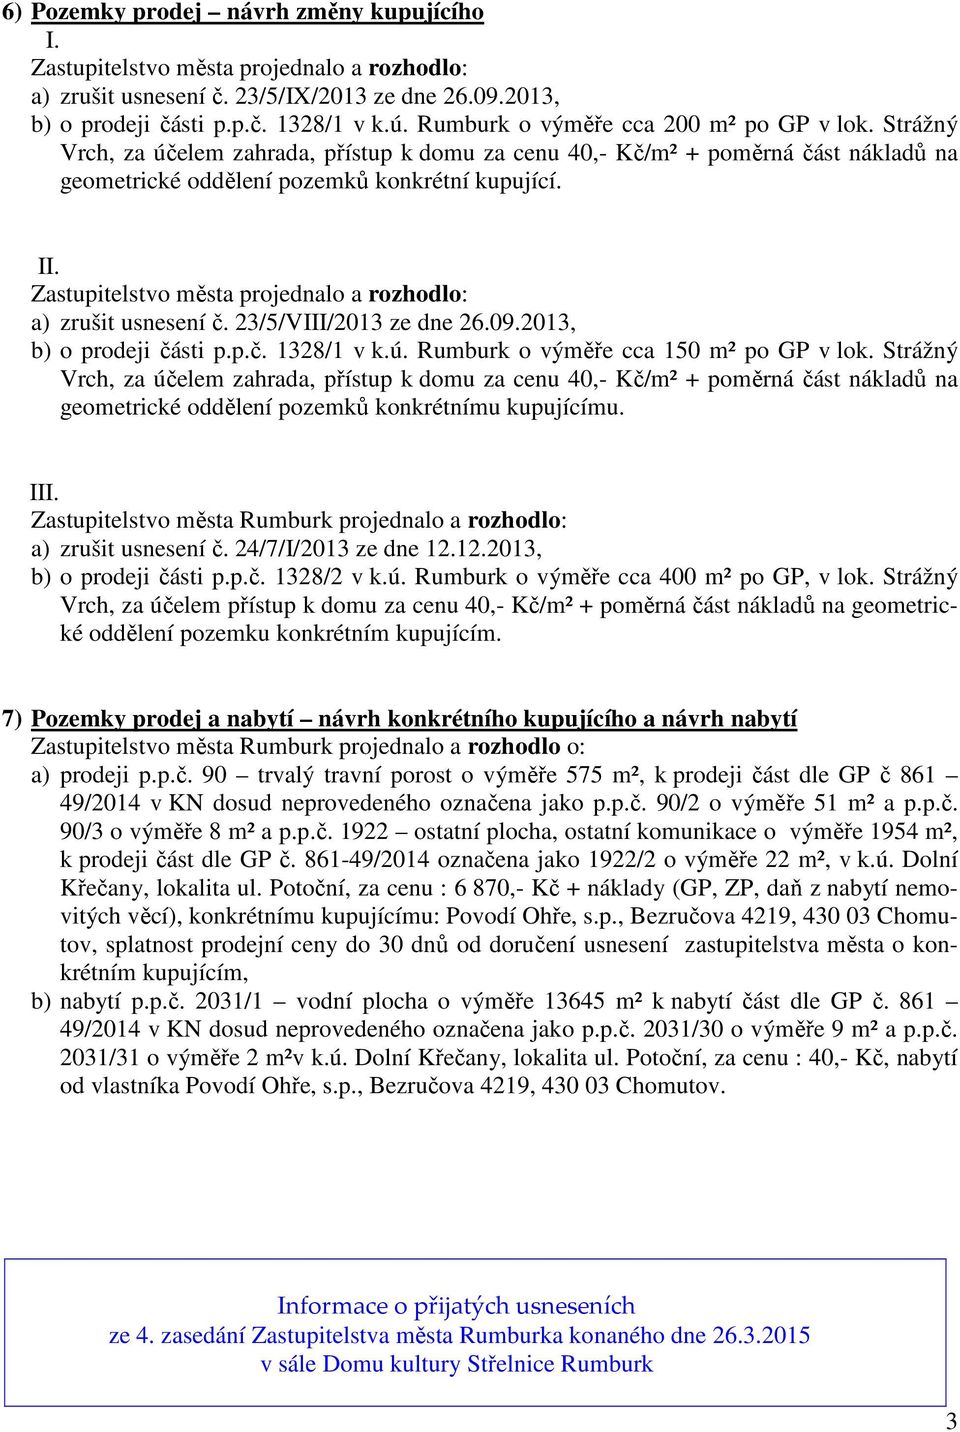 Zastupitelstvo města projednalo a rozhodlo: a) zrušit usnesení č. 23/5/VIII/2013 ze dne 26.09.2013, b) o prodeji části p.p.č. 1328/1 v k.ú. Rumburk o výměře cca 150 m² po GP v lok.